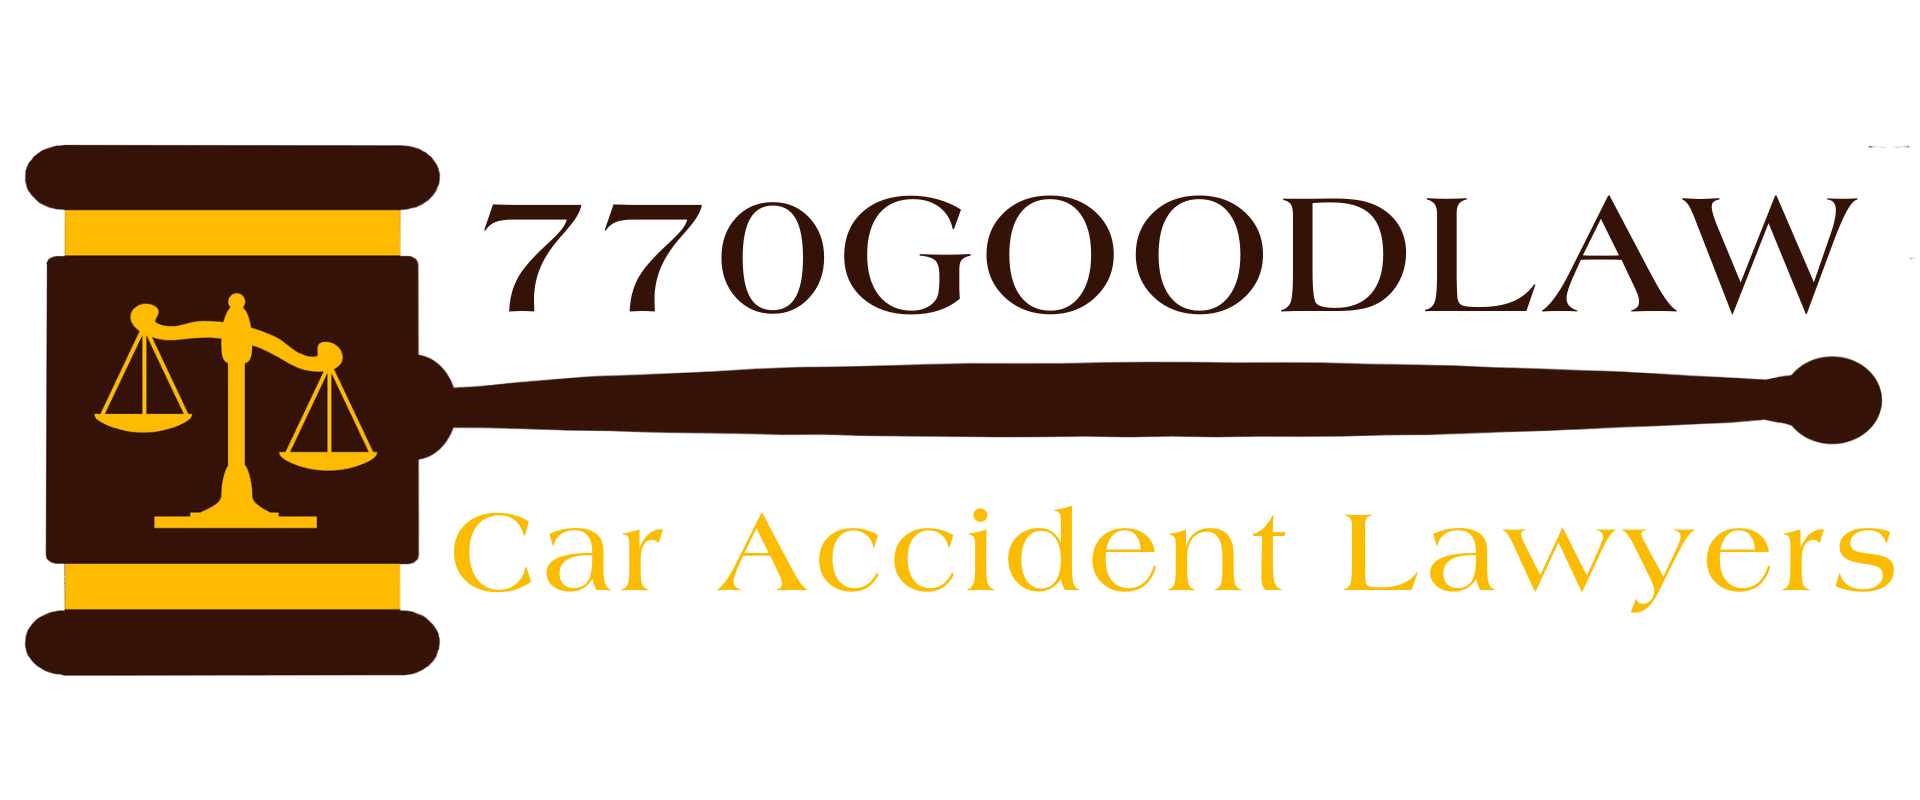 (c) 770goodlaw.com